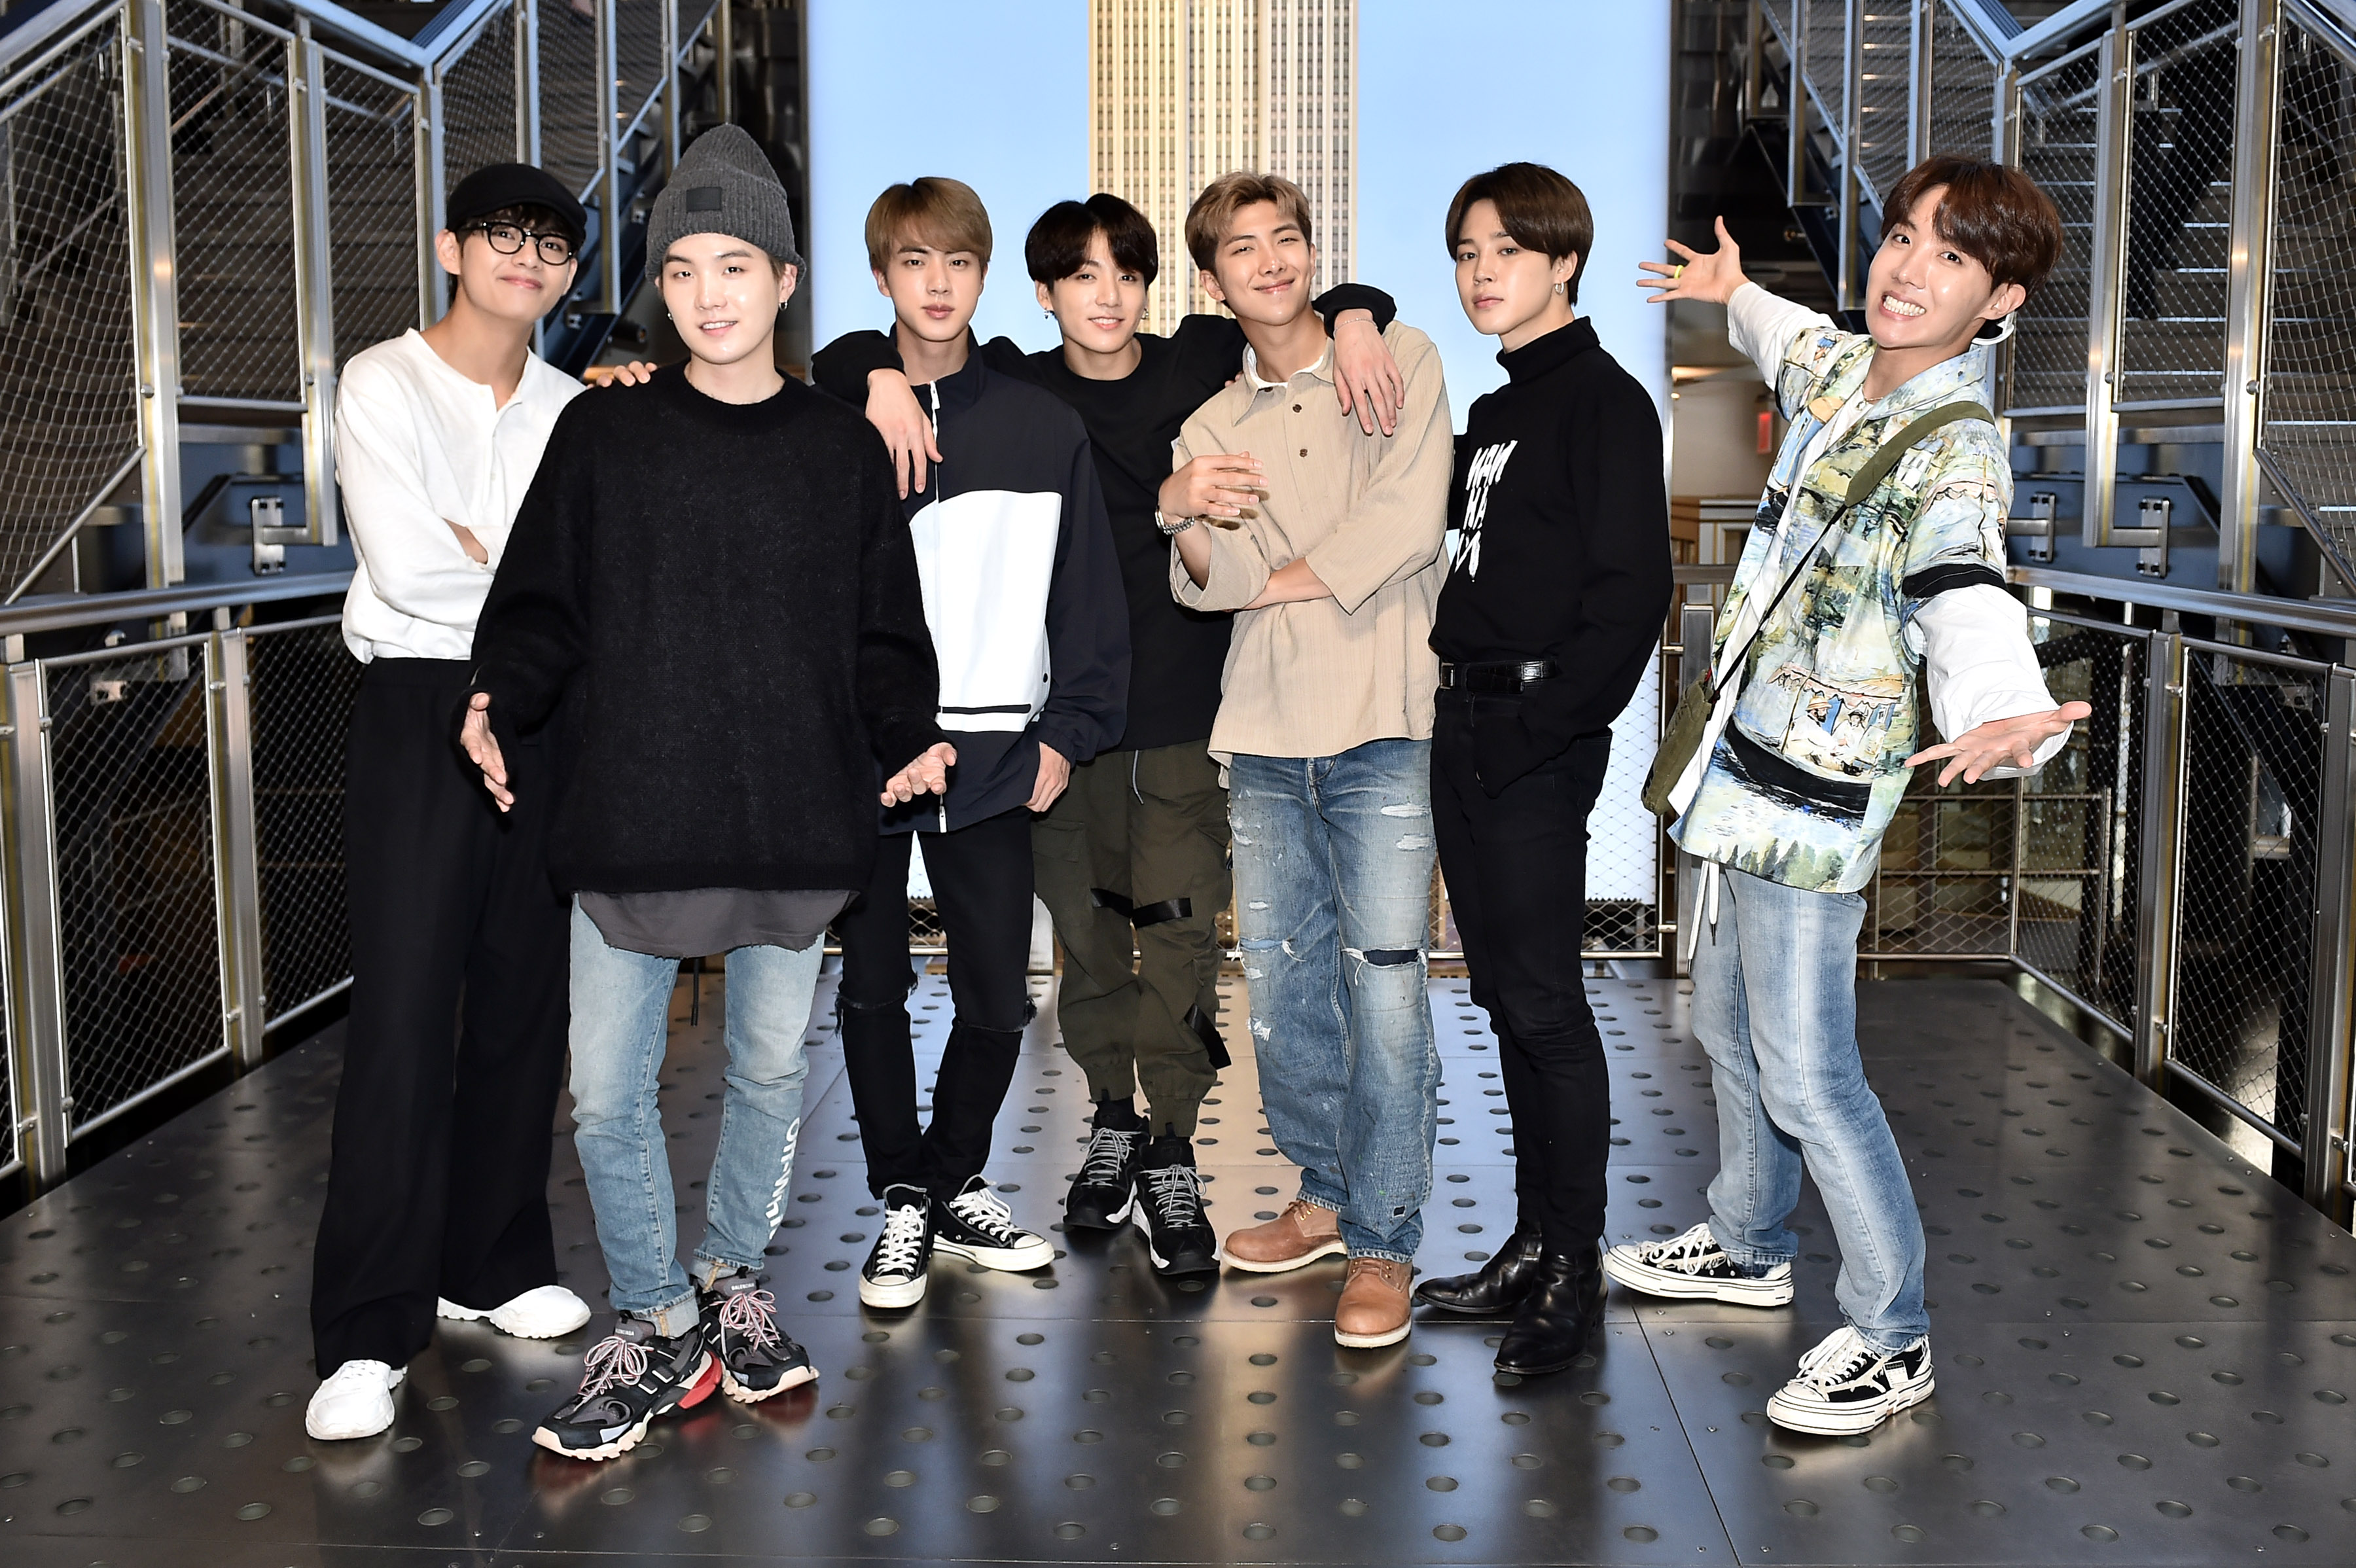 Die Originale: V, Suga, Jin, Jungkook, RM, Jimin, and J-Hope 2019 in New York.